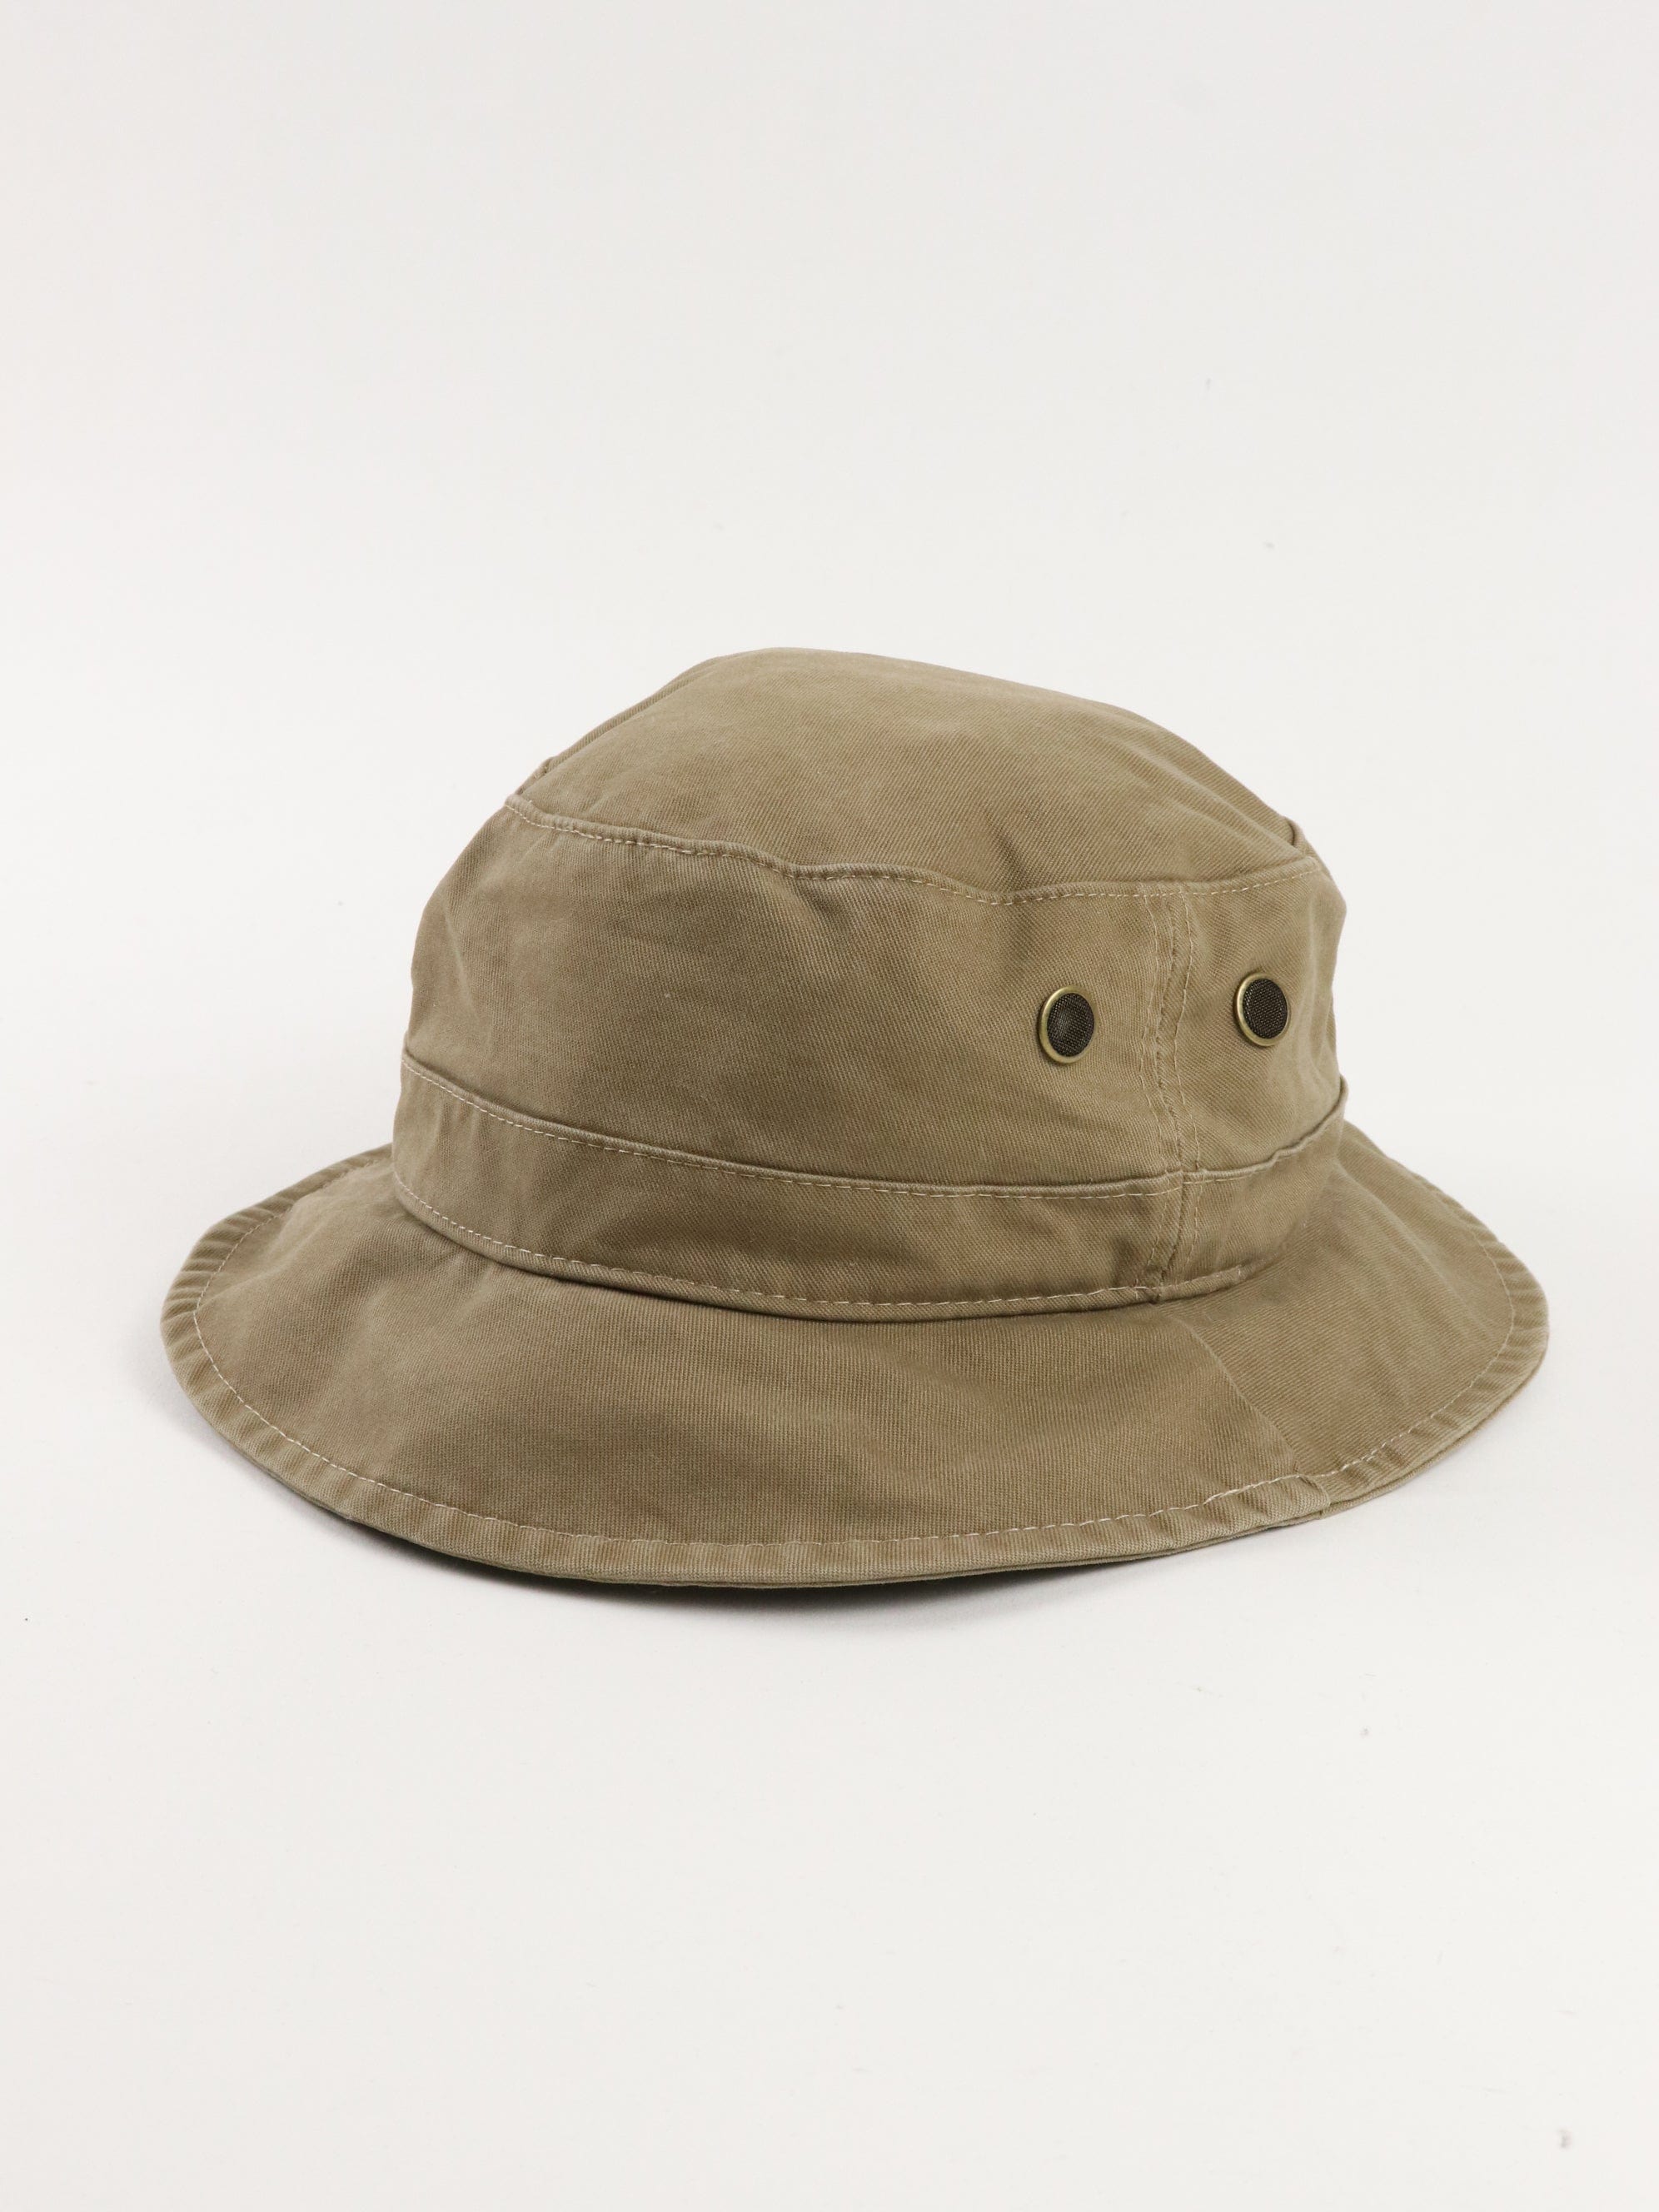 Broner Hats Bucket Cap Adult Large Brown Outdoors Explore